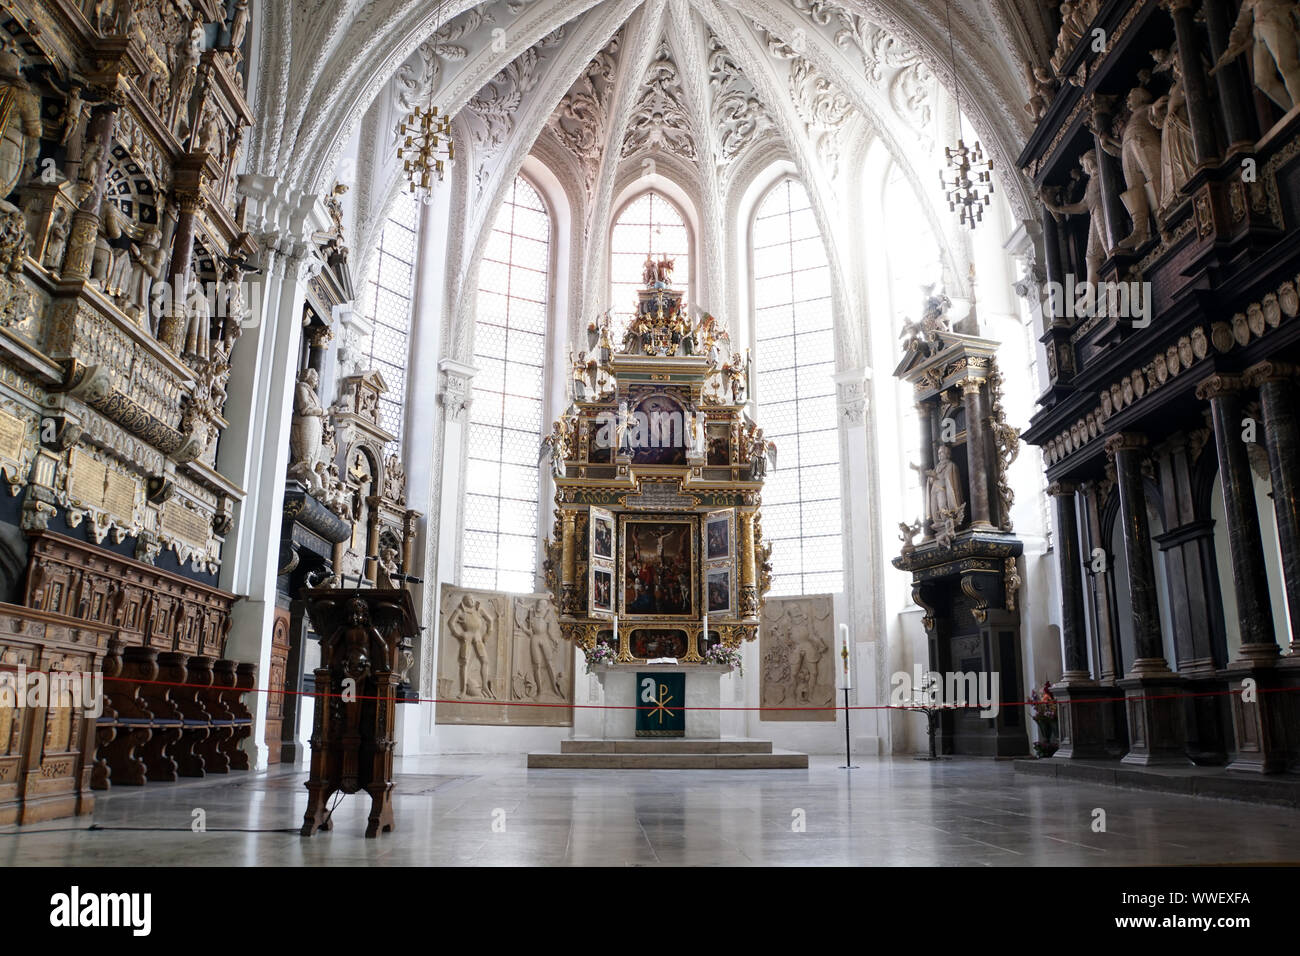 barocke evangelische Stadtkirche St. Marien, Celle, Niedersachsen, Deutschland Stock Photo